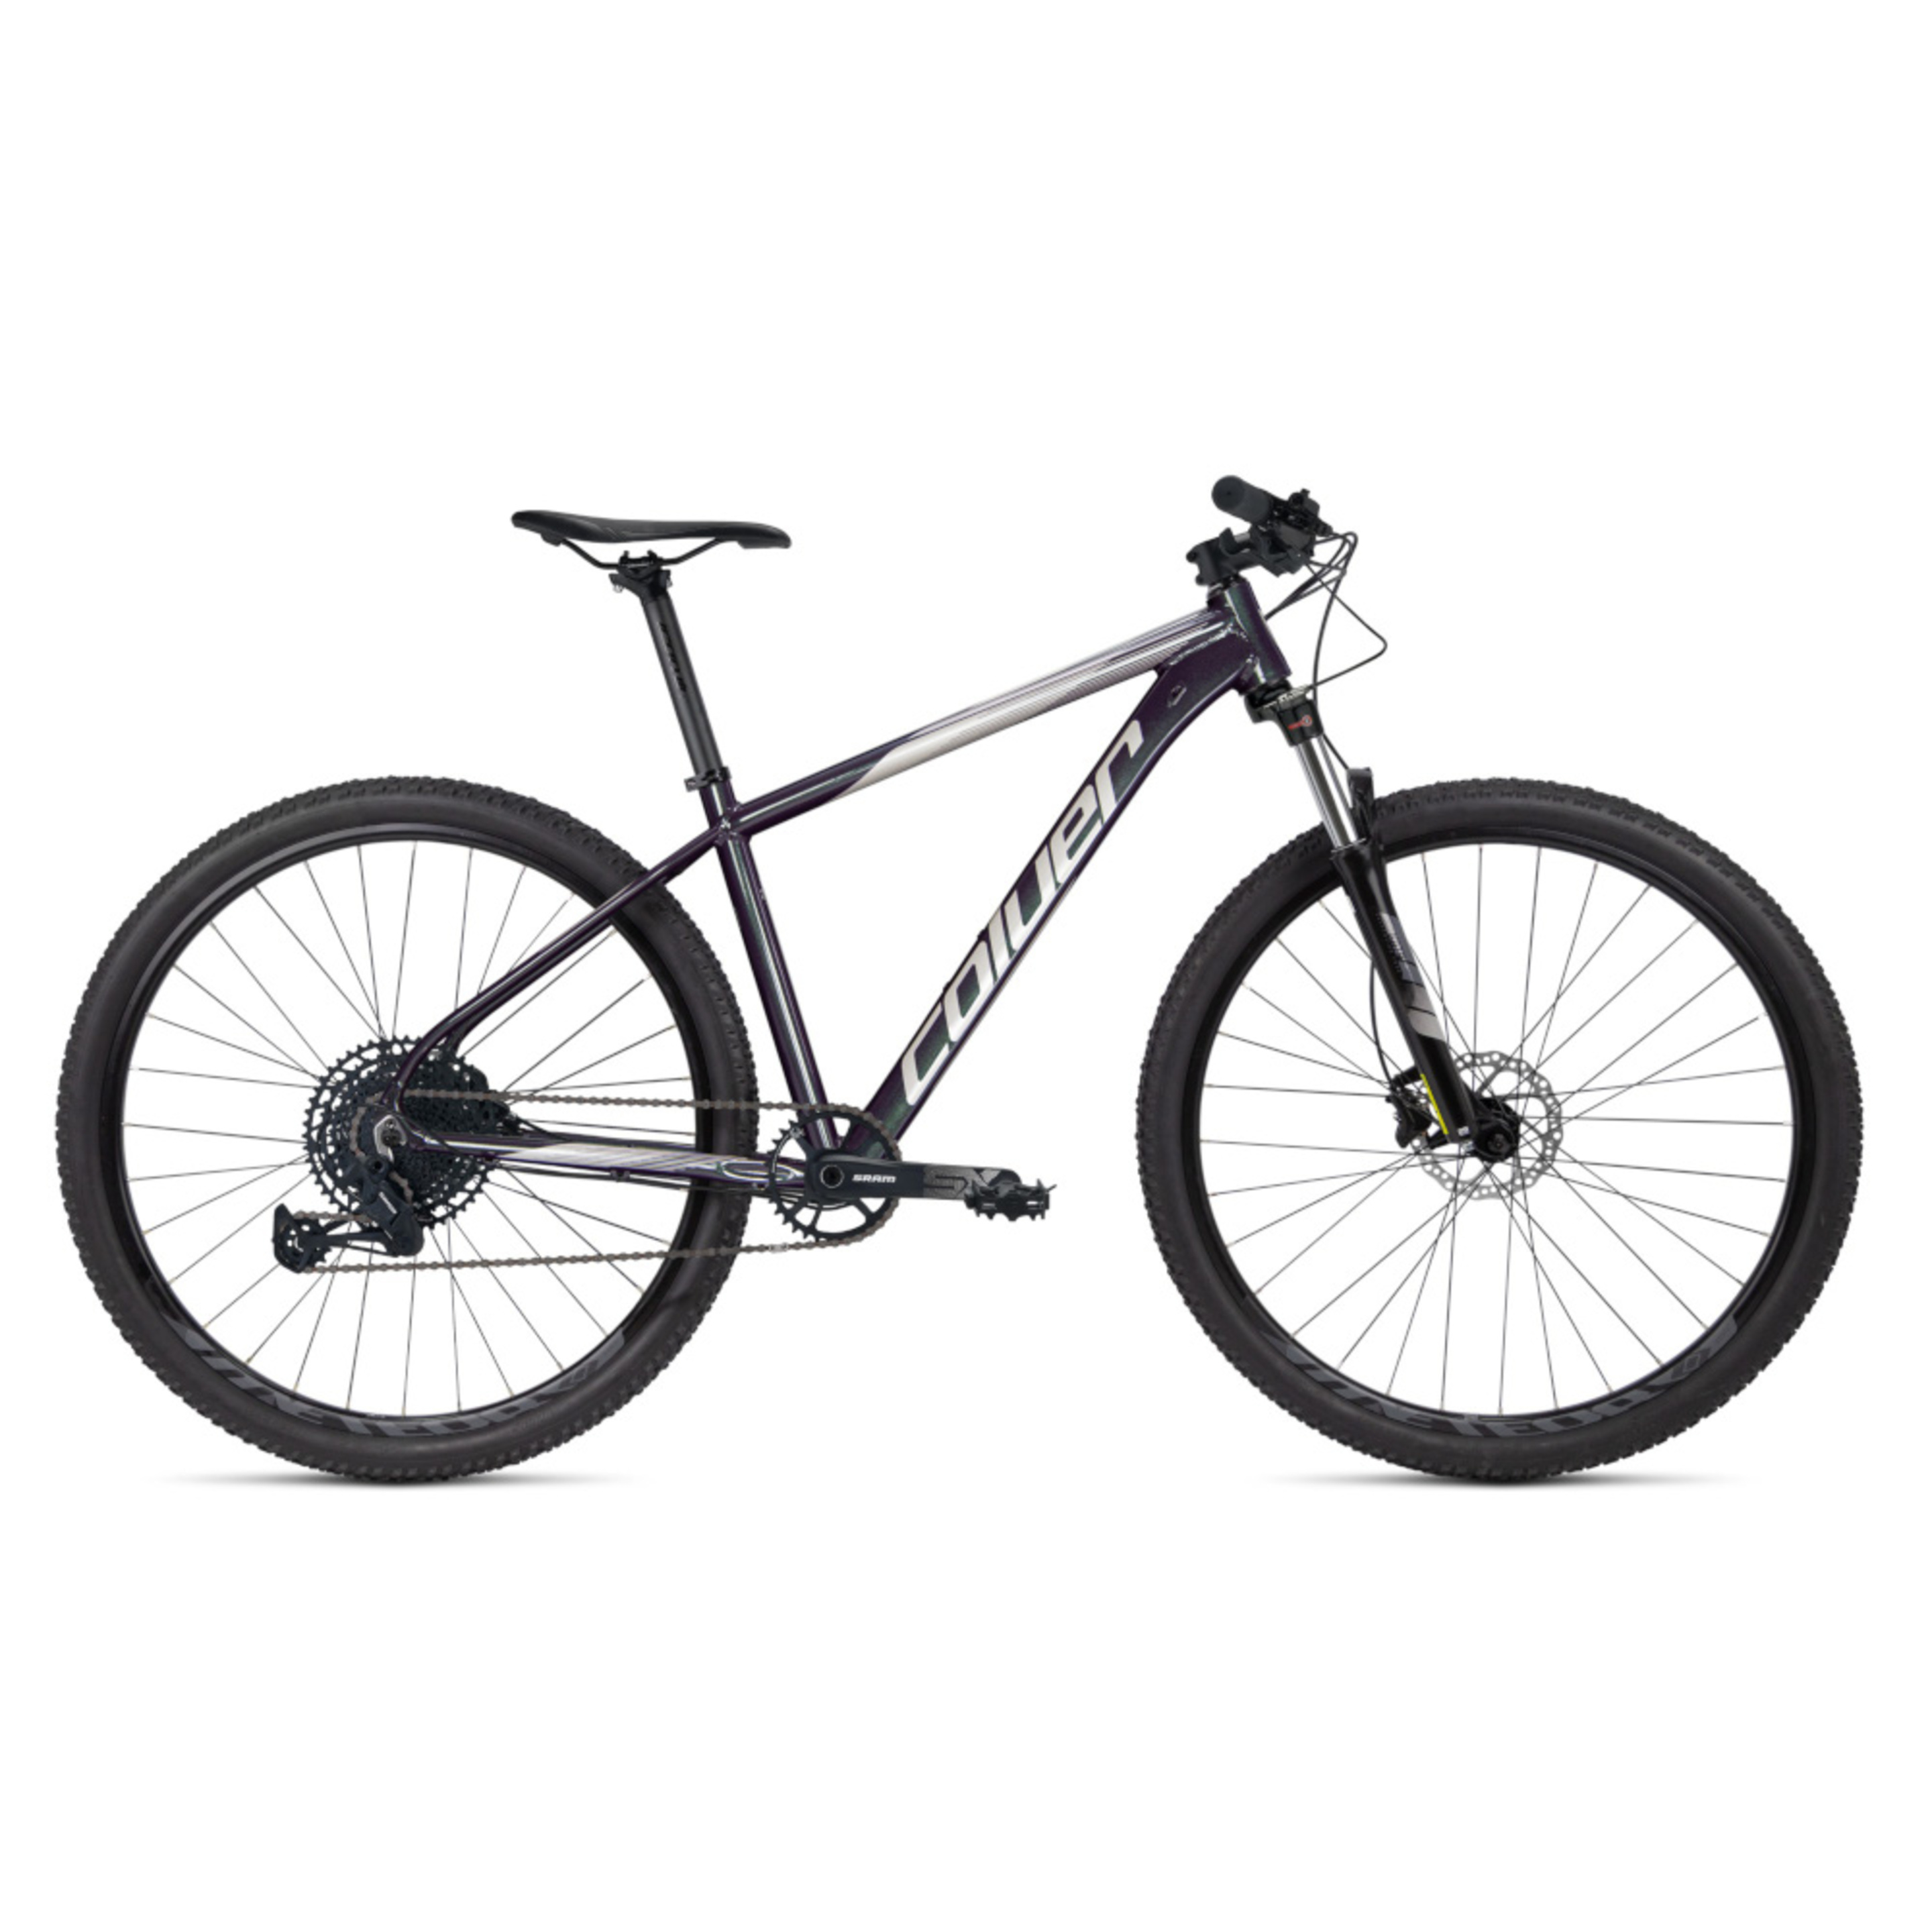 Bicicleta Montaña 29" Coluer Limbo 296 - purpura - 